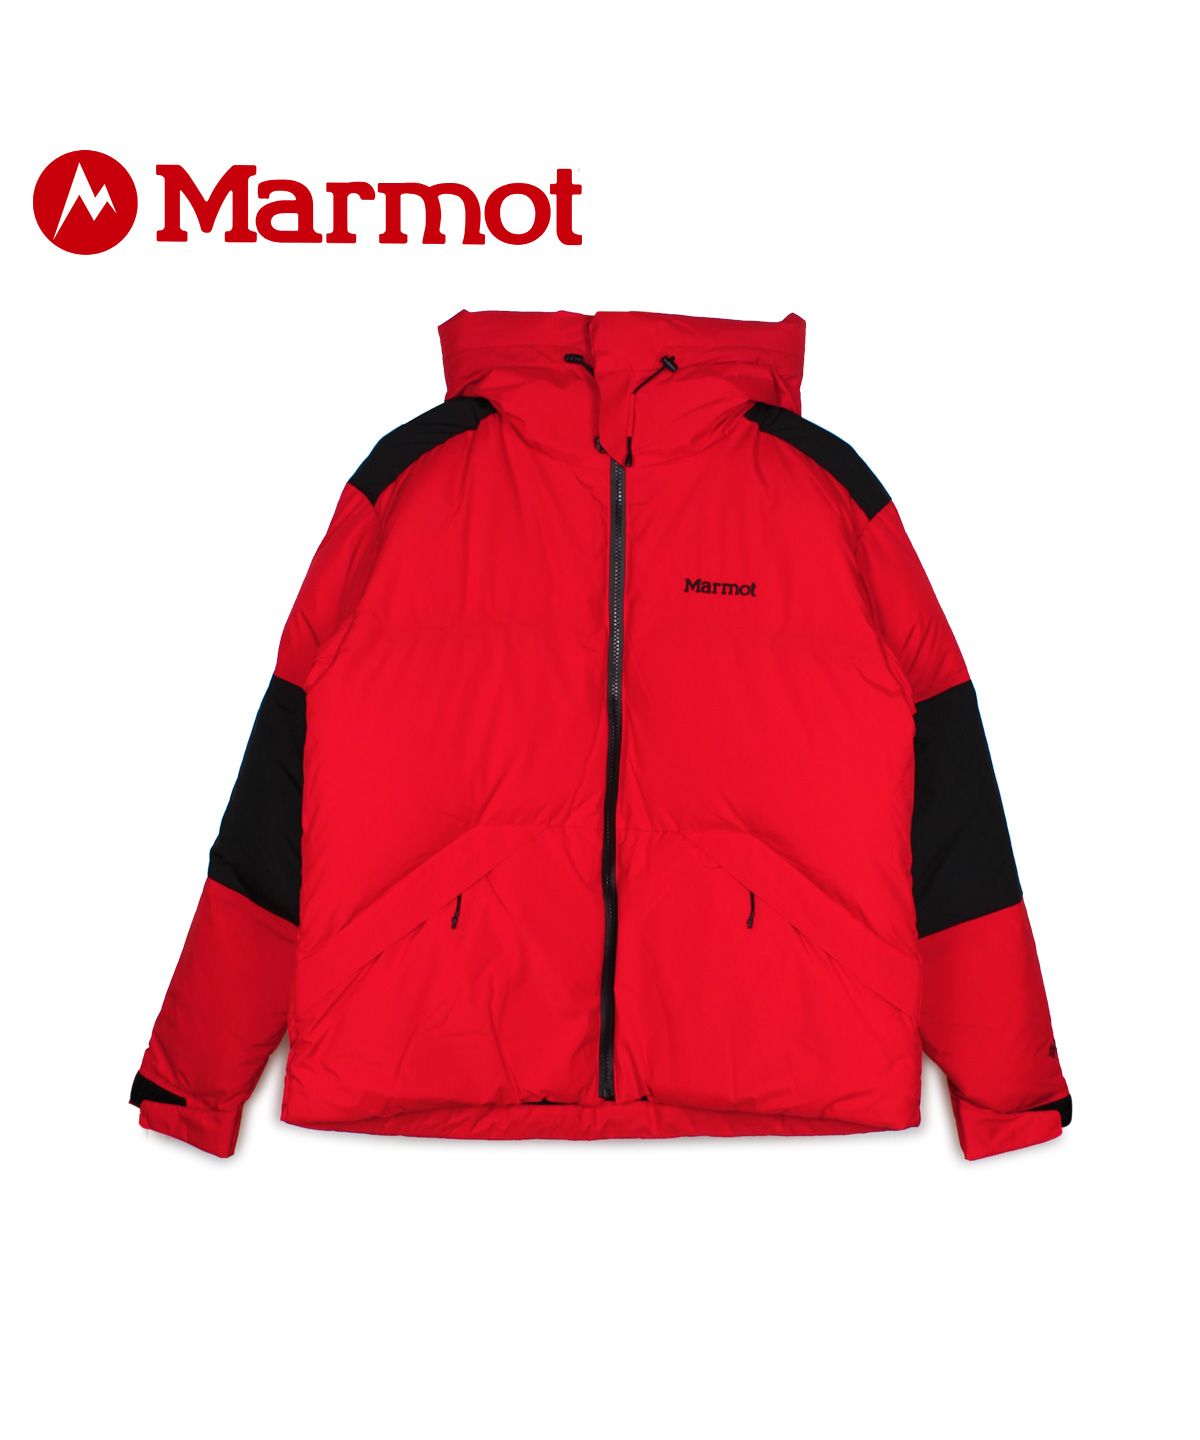 マーモット Marmot パーカー 正規品質保証 ジャケット ダウンジャケット パルバット インフィニアム メンズ レディース ONLINE PARKA スニークオンラインショップ PARBAT SHOP SNEAK 人気デザイナー INFINIUM レ